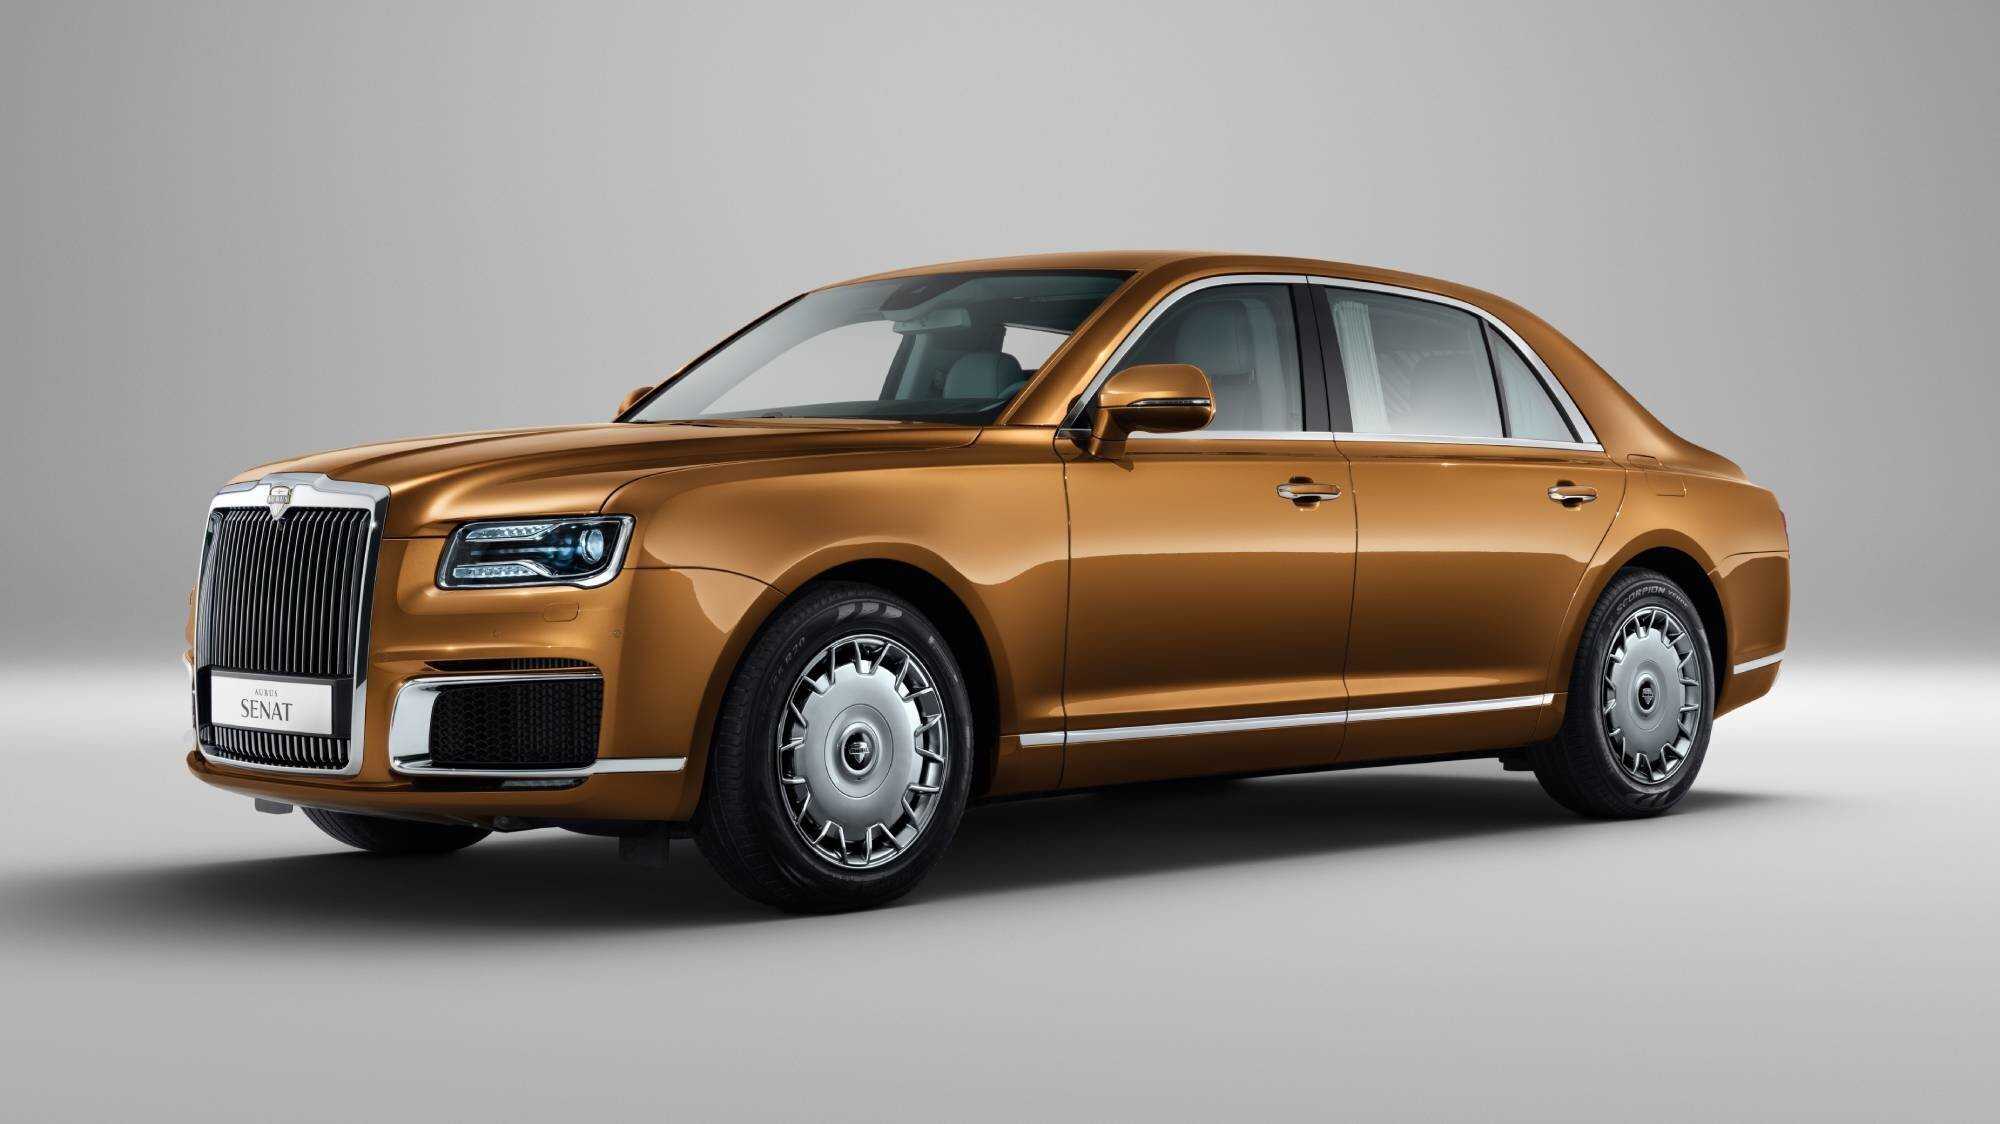 Автомобиль aurus senat limousine - фото, технические характеристики и комплектации